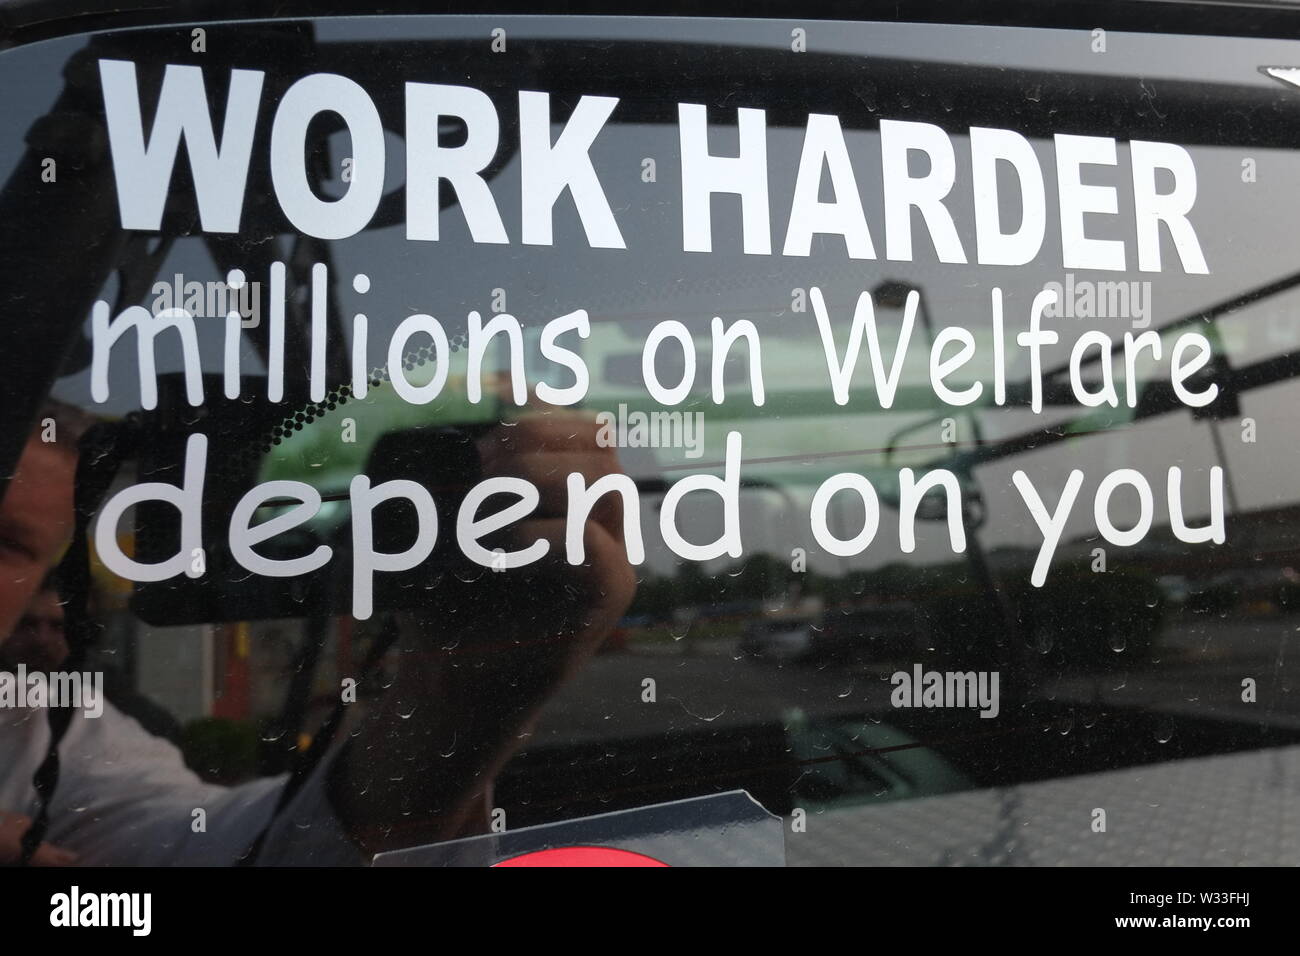 Anti Welfare Zeichen in Chicago, Ill. Zielt auf Menschen auf Wohlfahrt. Arbeiten Sie härter Millionen auf Wohlfahrt hängen von Ihnen ab. Stockfoto